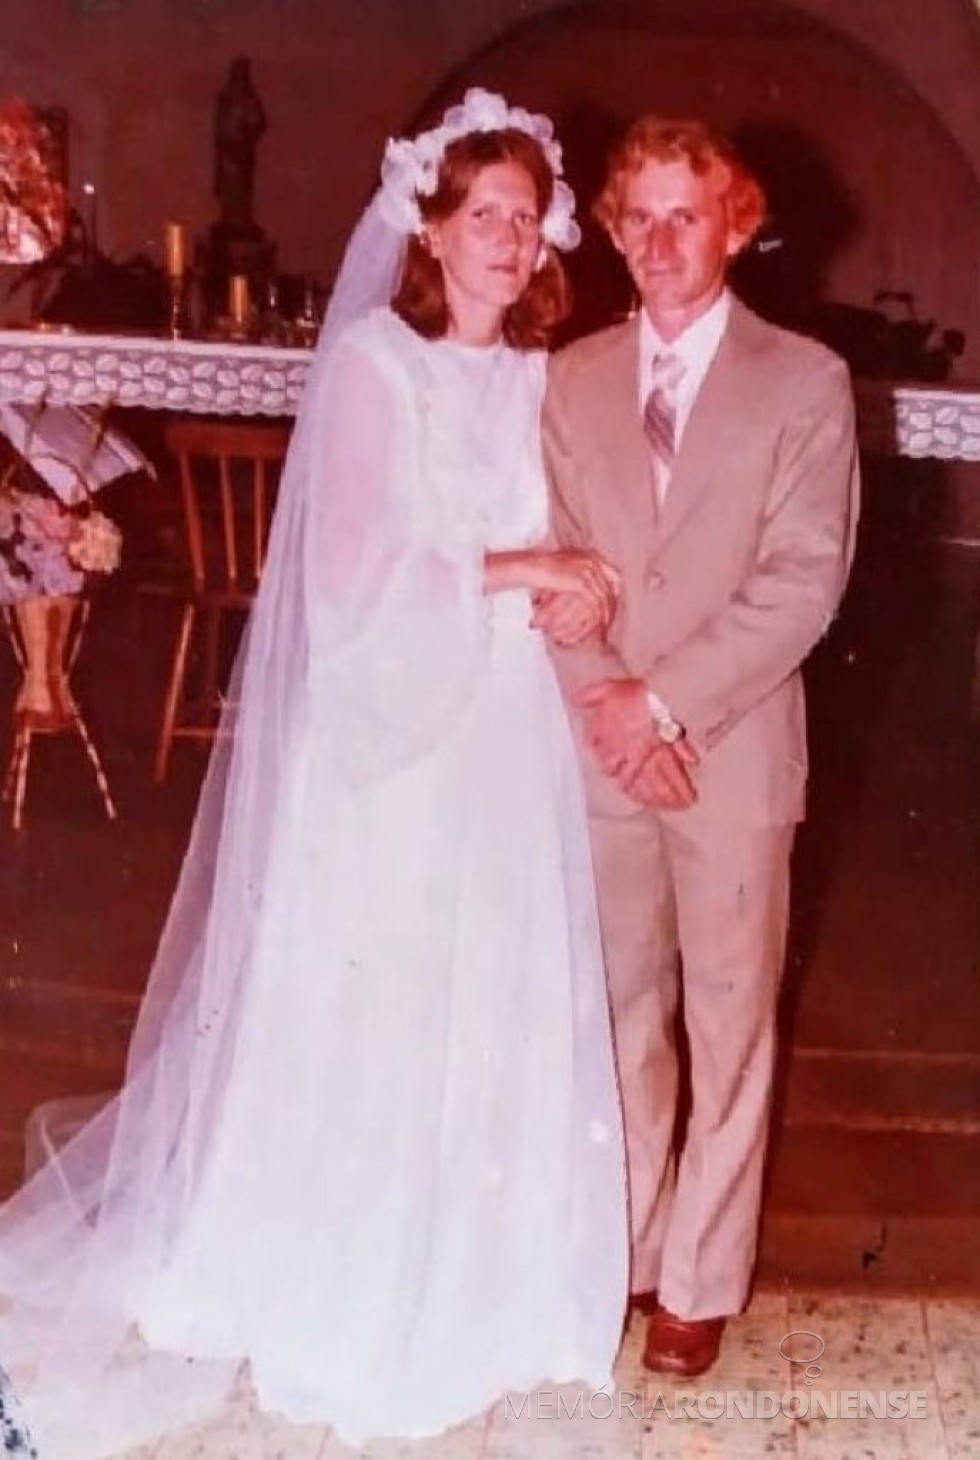 || Jovens rondonenses Ingret Stassun e Mário Steinmacher que casaram em novembro de 1979.
Imagem: Acervo do casal - FOTO 13 - 